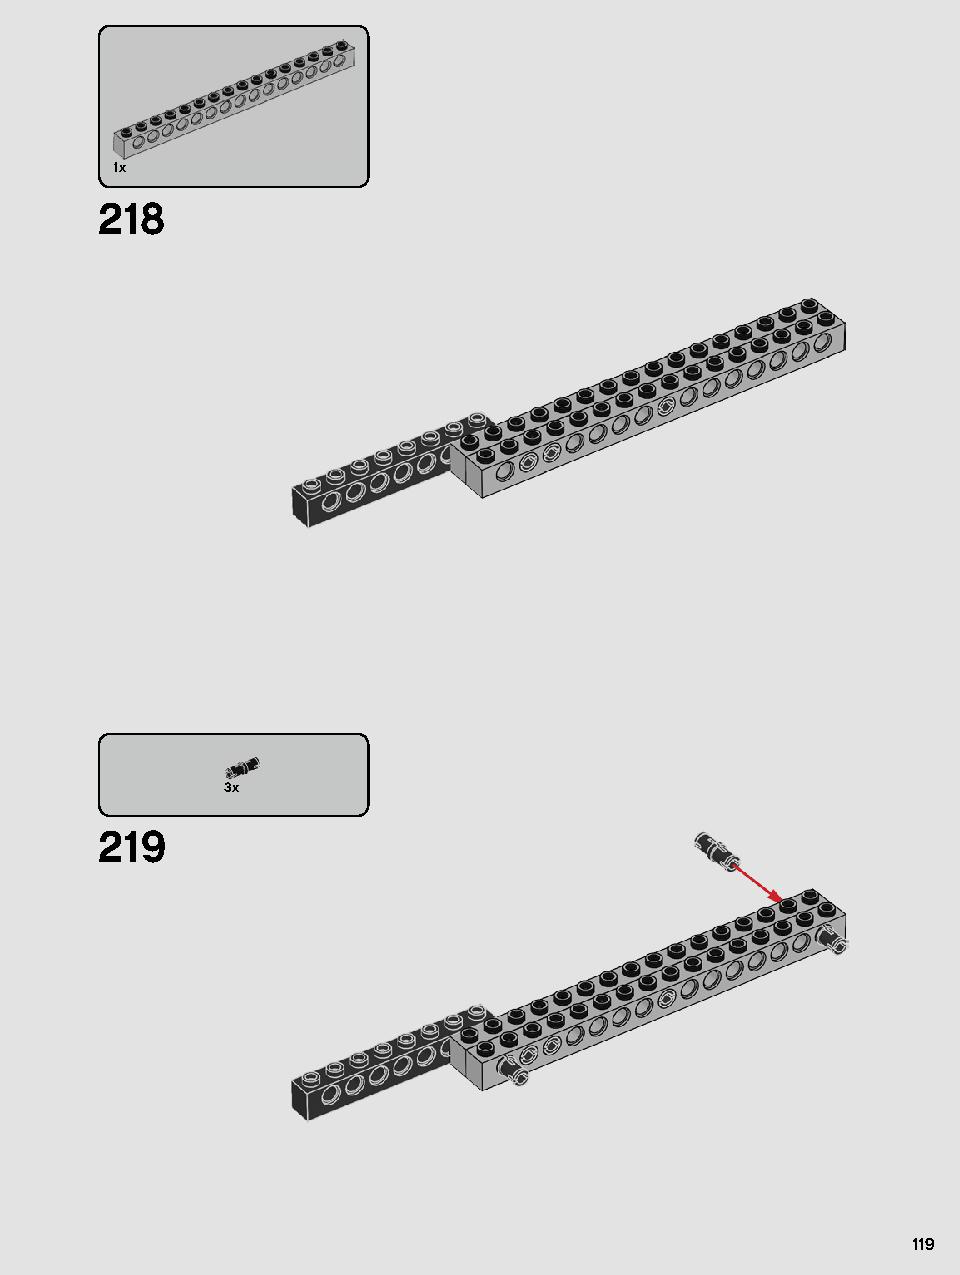 스타워즈 카일로 렌의 셔틀™ 75256 레고 세트 제품정보 레고 조립설명서 119 page